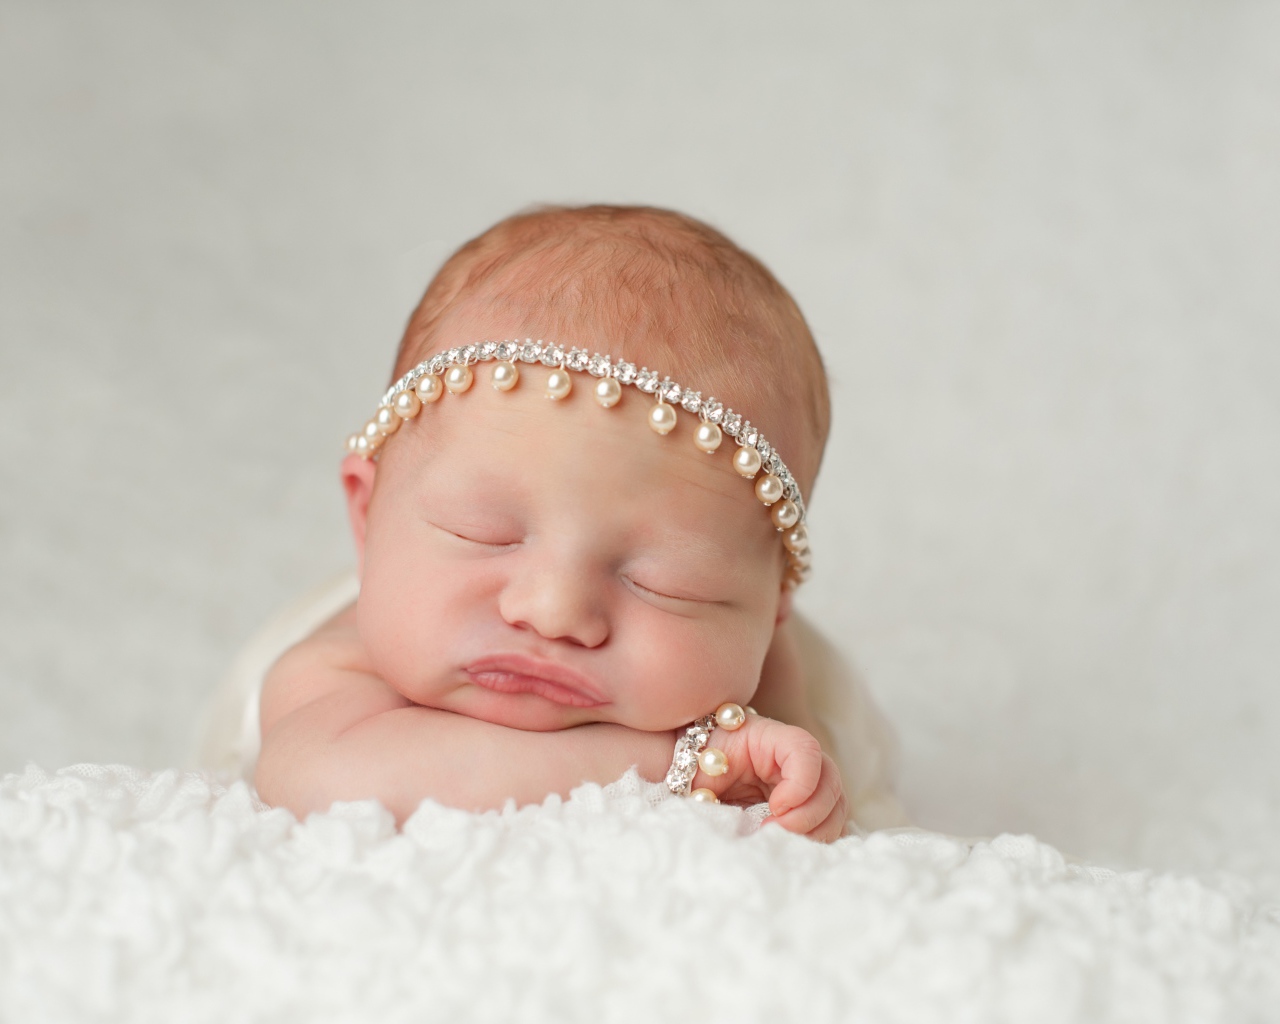 Маленький спящий грудной ребенок с красивым украшением на голове